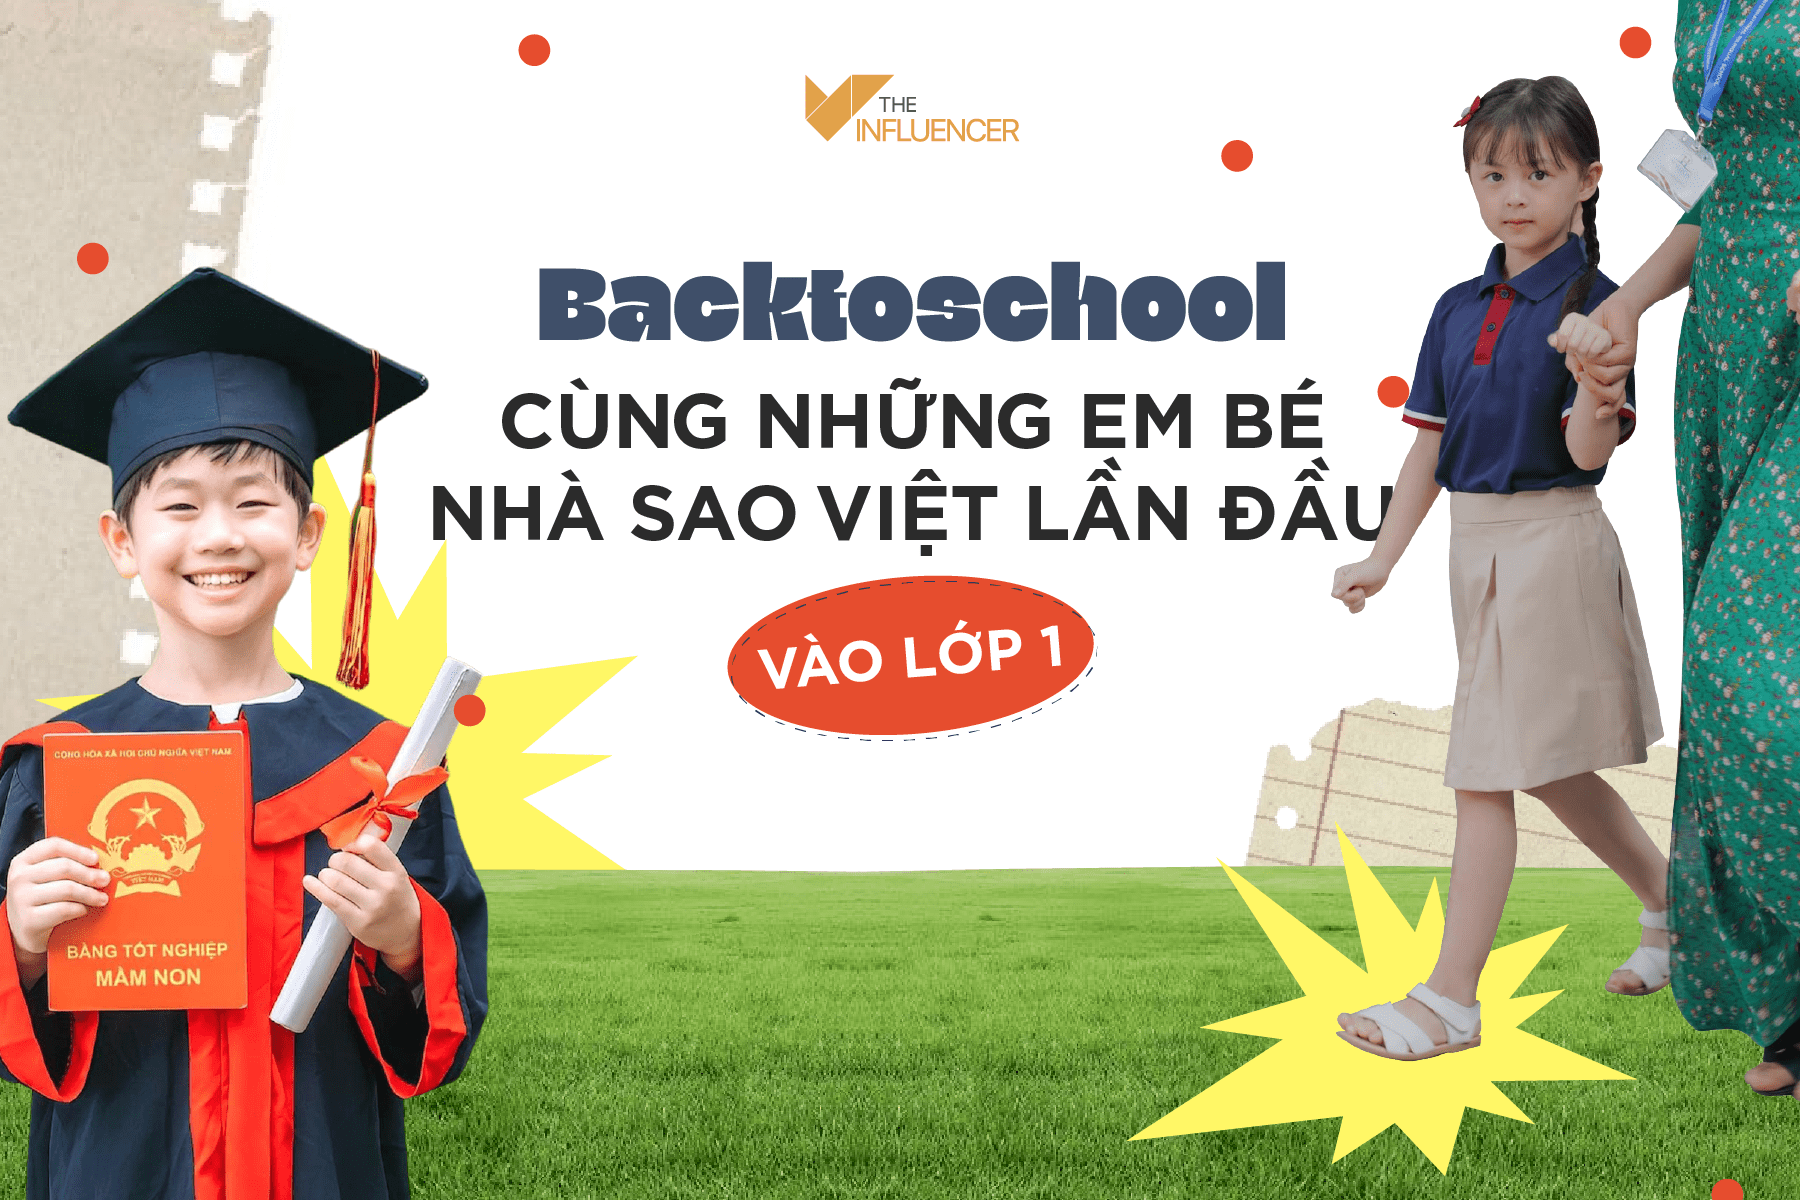 #Toplist: Back-to-school cùng những em bé nhà sao Việt lần đầu vào lớp 1